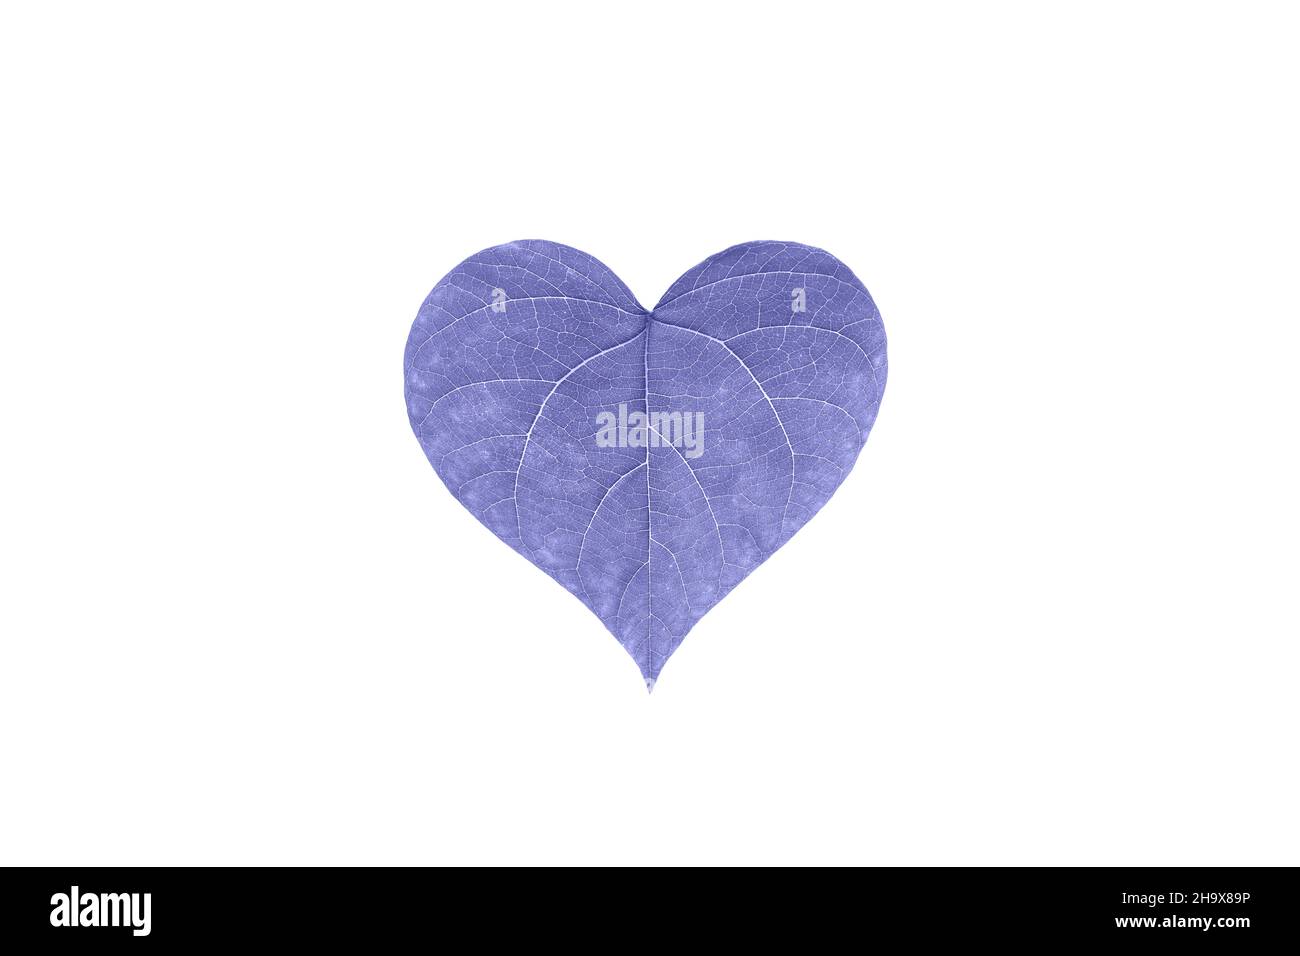 Les congés violets sont disposés en forme de coeur sur un fond blanc isolé.Le concept de l'amour pour la nature.Concept écologique, protection de la nature et de l'écologie.Tons en 2022 couleurs. Banque D'Images